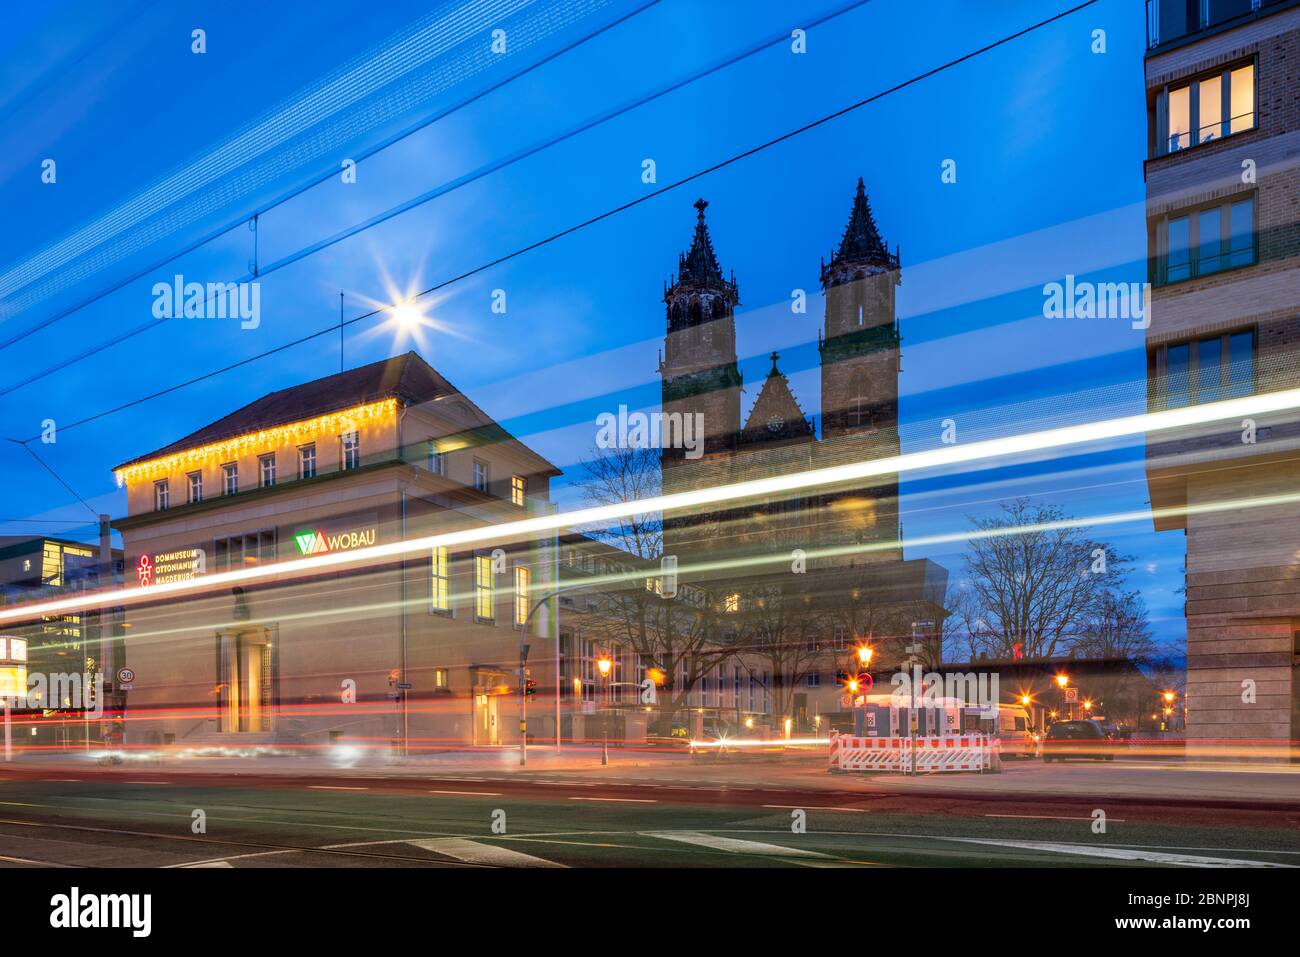 Alemania, Sajonia-Anhalt, Magdeburg, la Catedral de Magdeburg, frente a los senderos del tranvía, tiro de noche Foto de stock